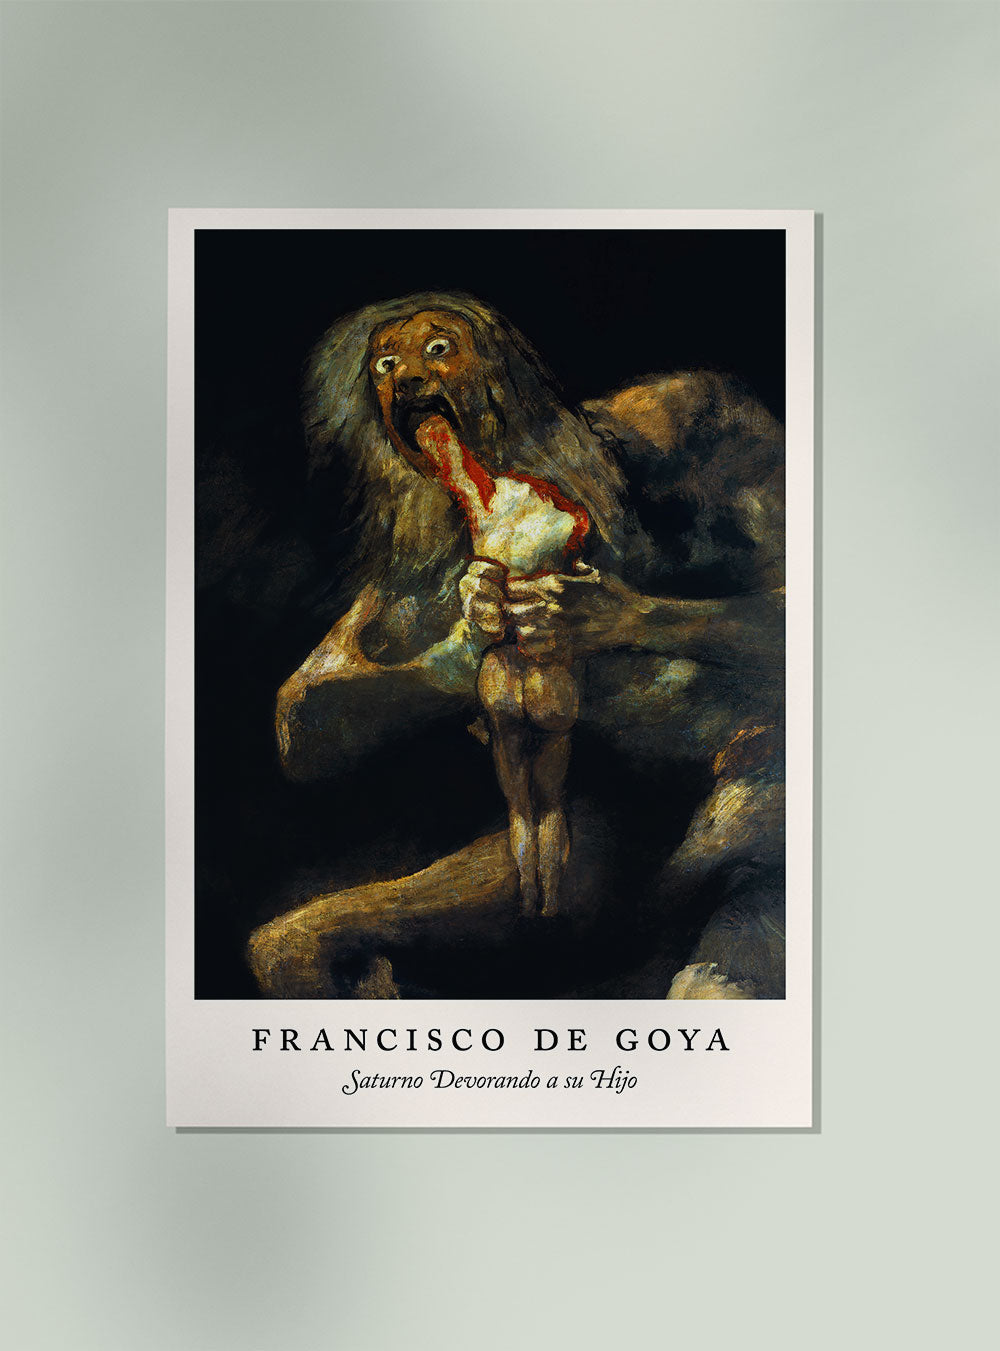 Saturno Devorando a su Hijo  (Saturn Devouring His Son) by Francisco de Goya